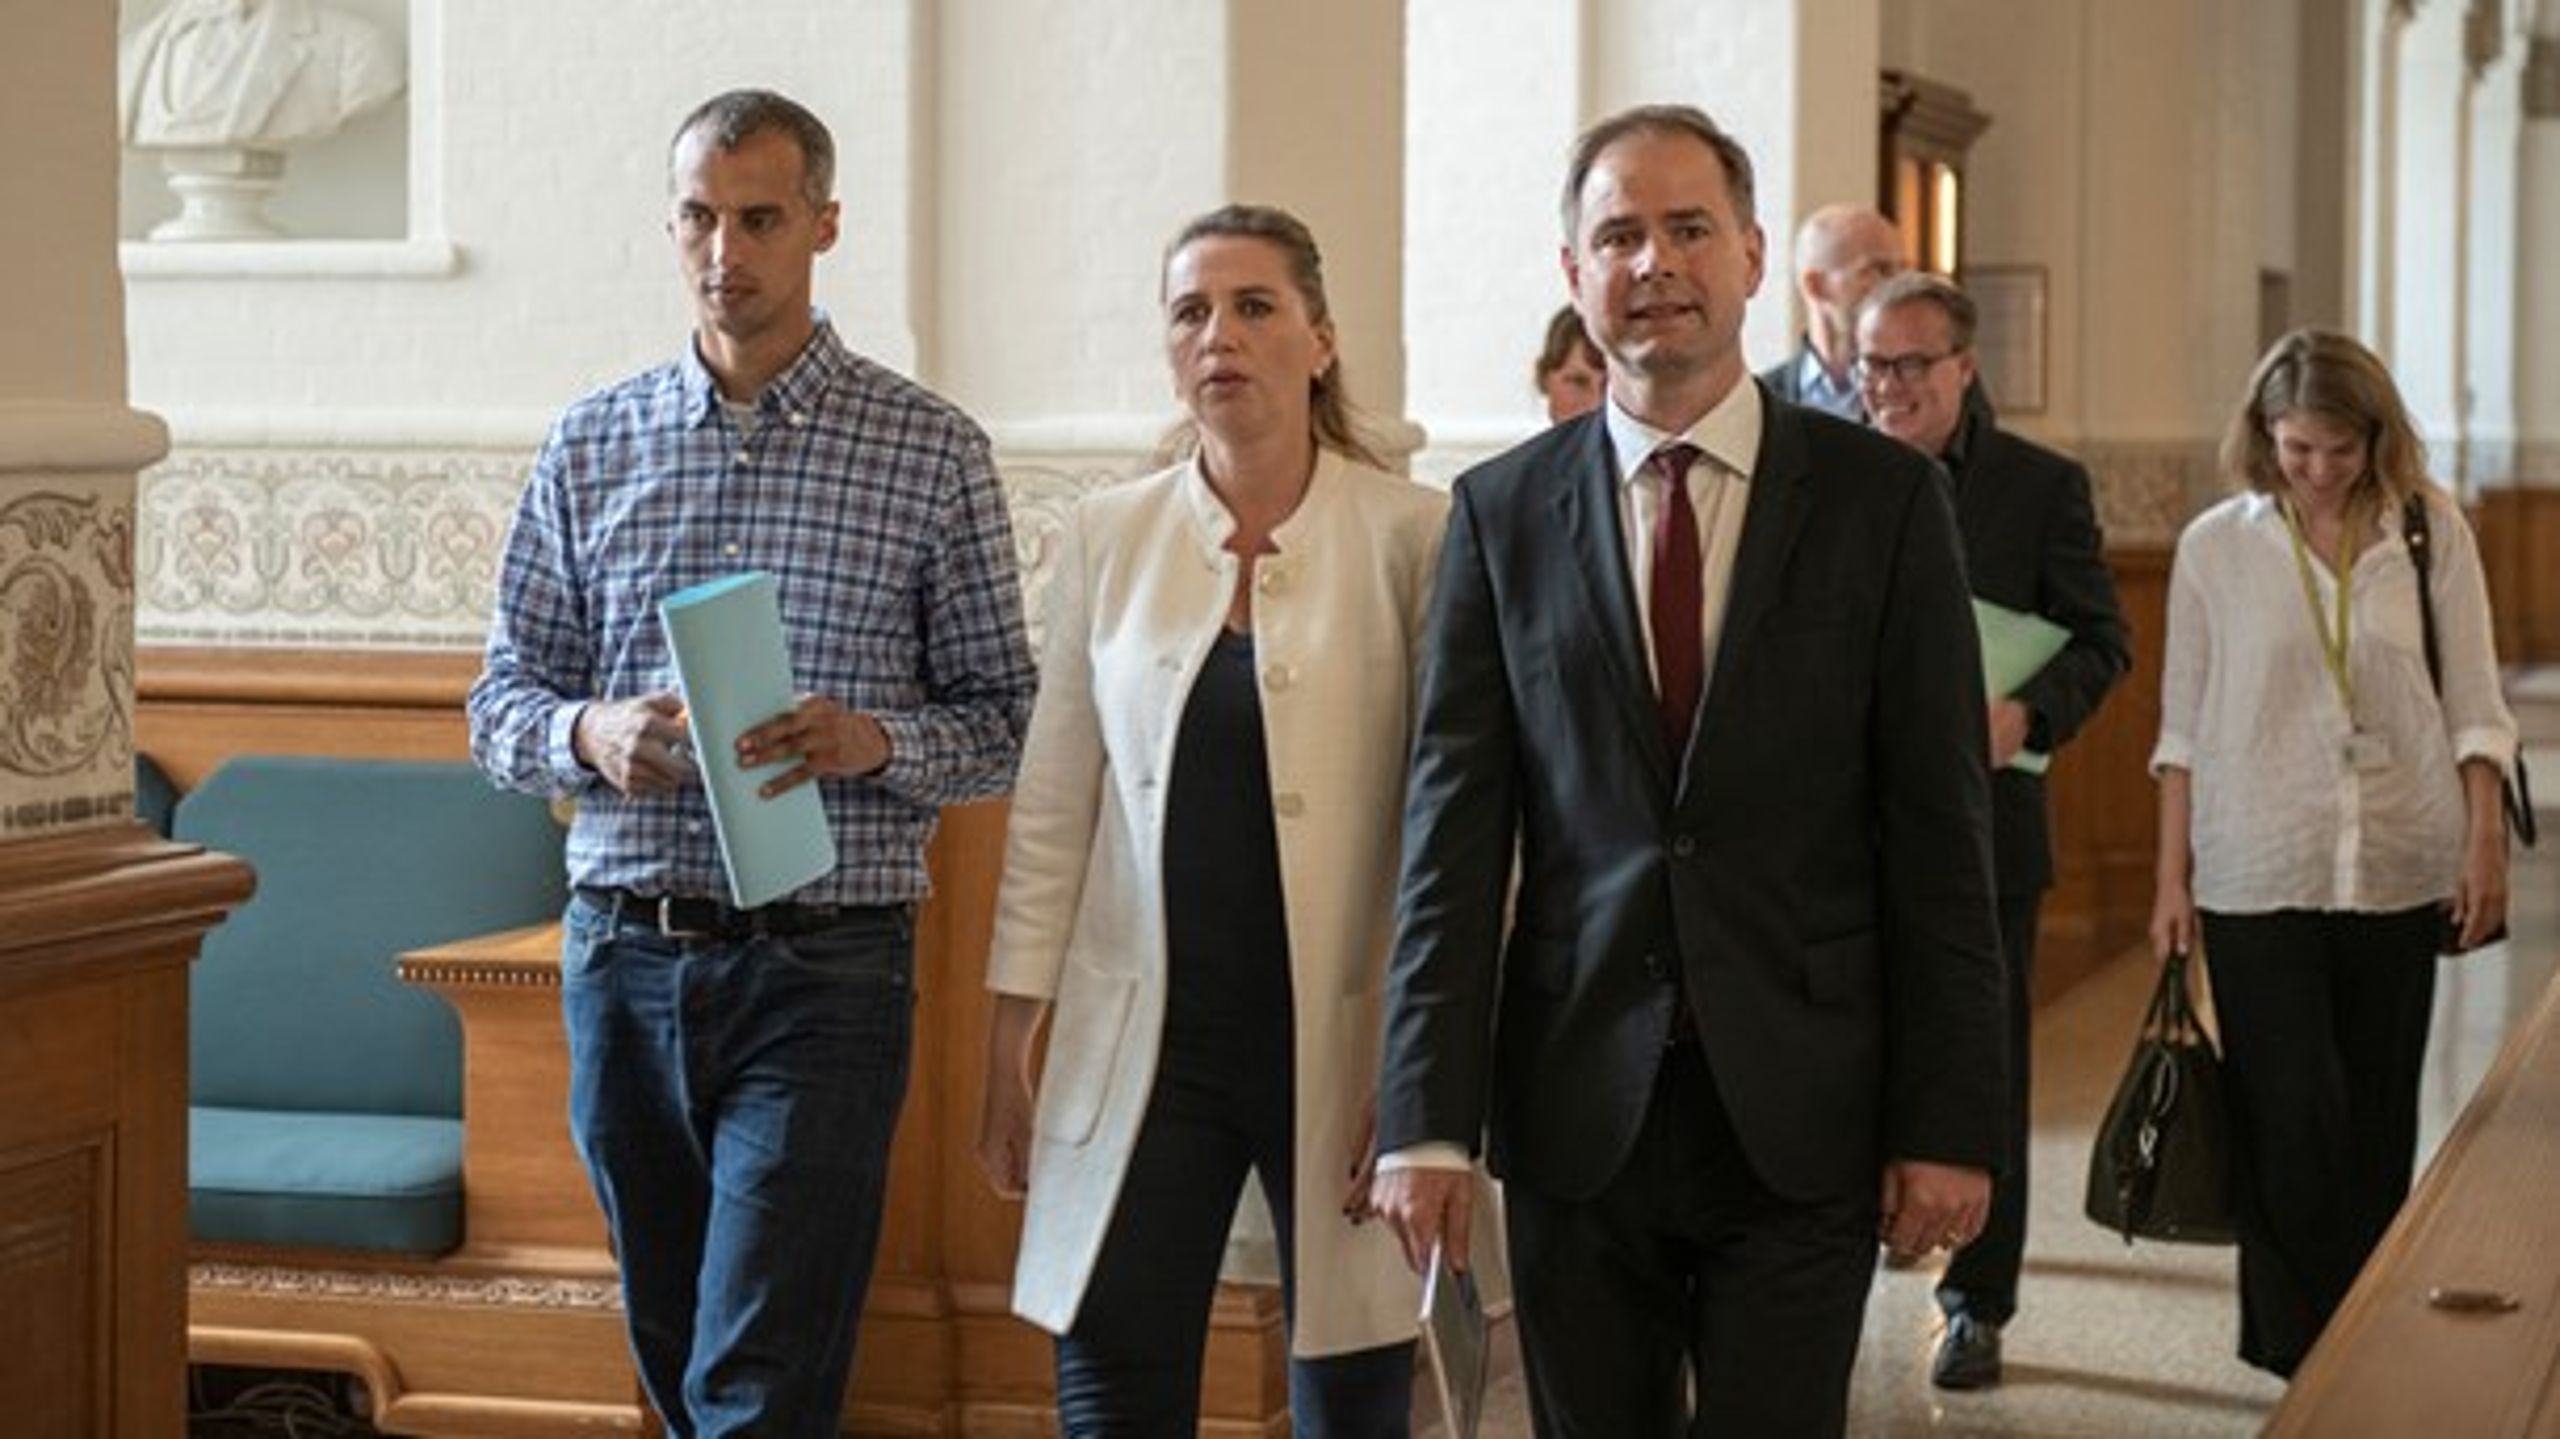 Mattias Tesfaye (S), Mette Frederiksen (S) og Nicolai Wammen (S) på vej til forhandling om regeringsdannelse, der kulminerede med det såkaldte forståelsespapir og en ren S-regering.